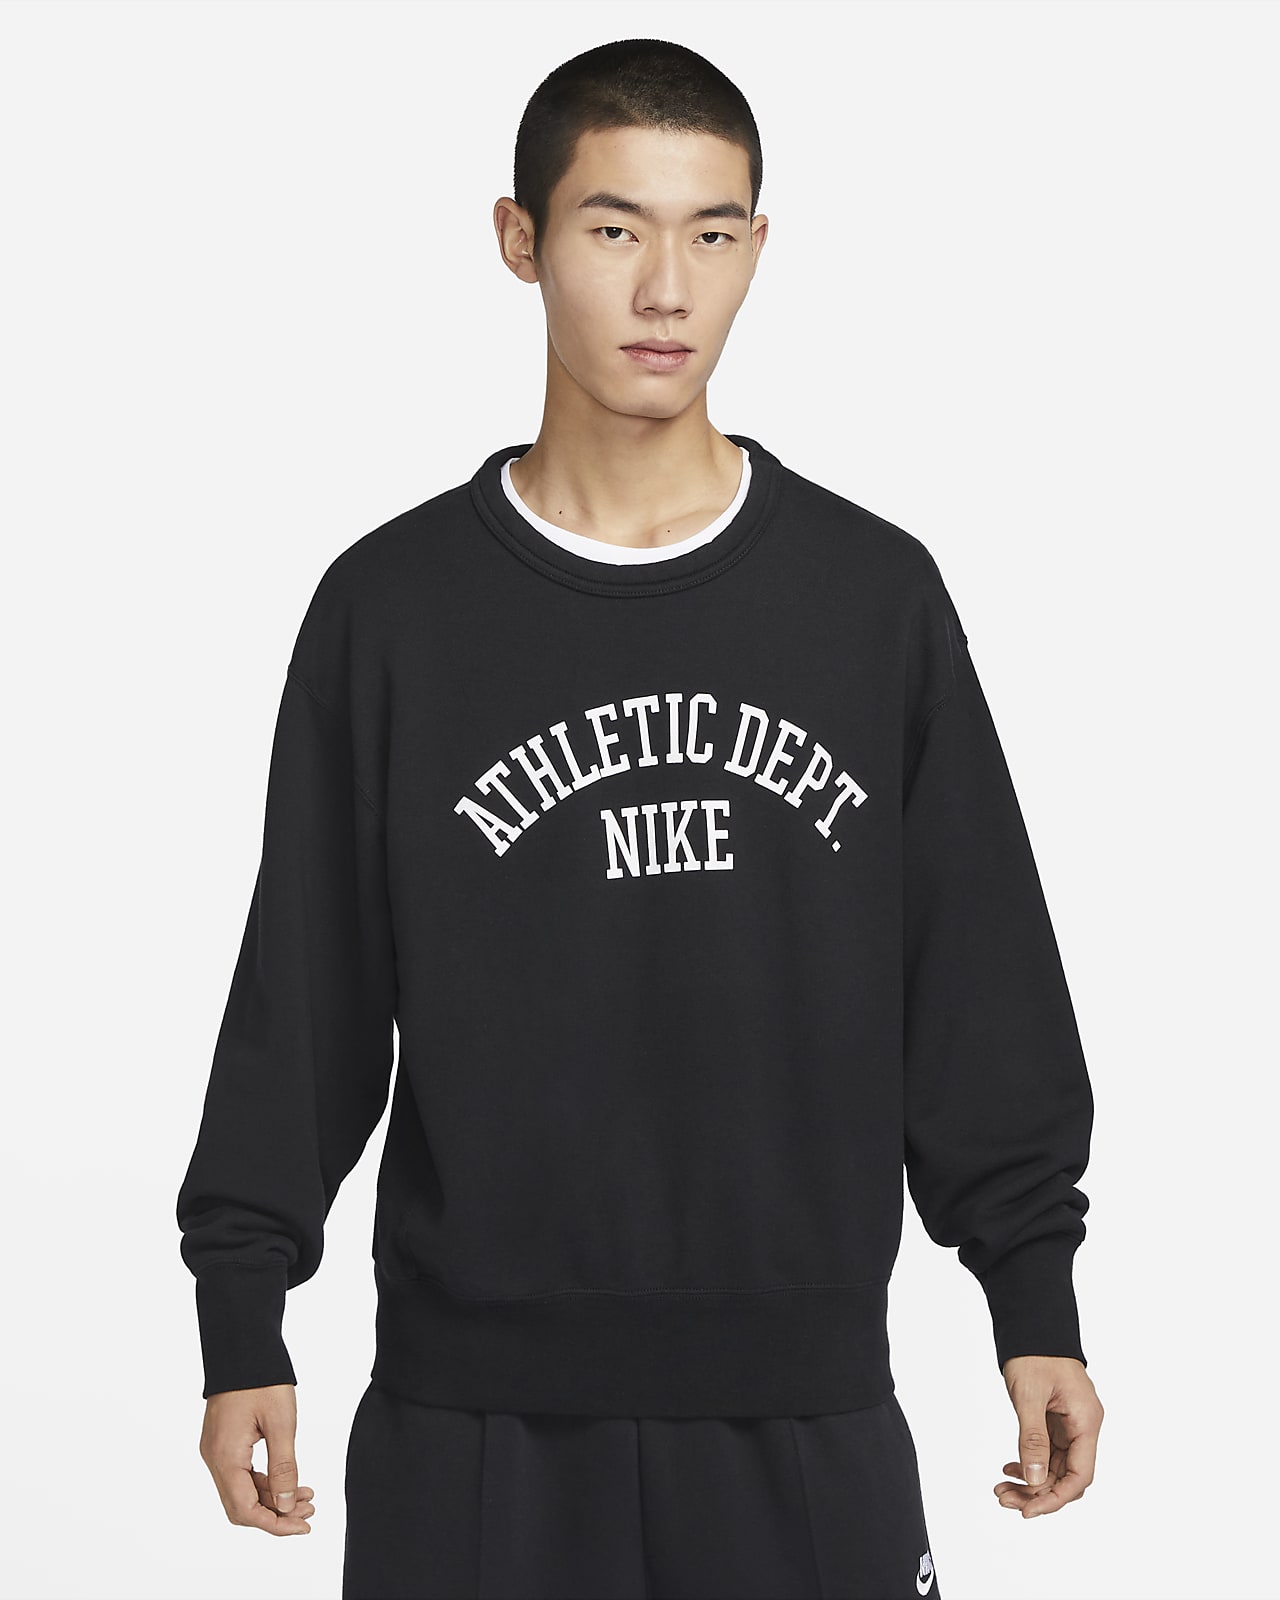 Methode Haiku nikkel Nike Sportswear Trend Men's Fleece Crew. Nike ID